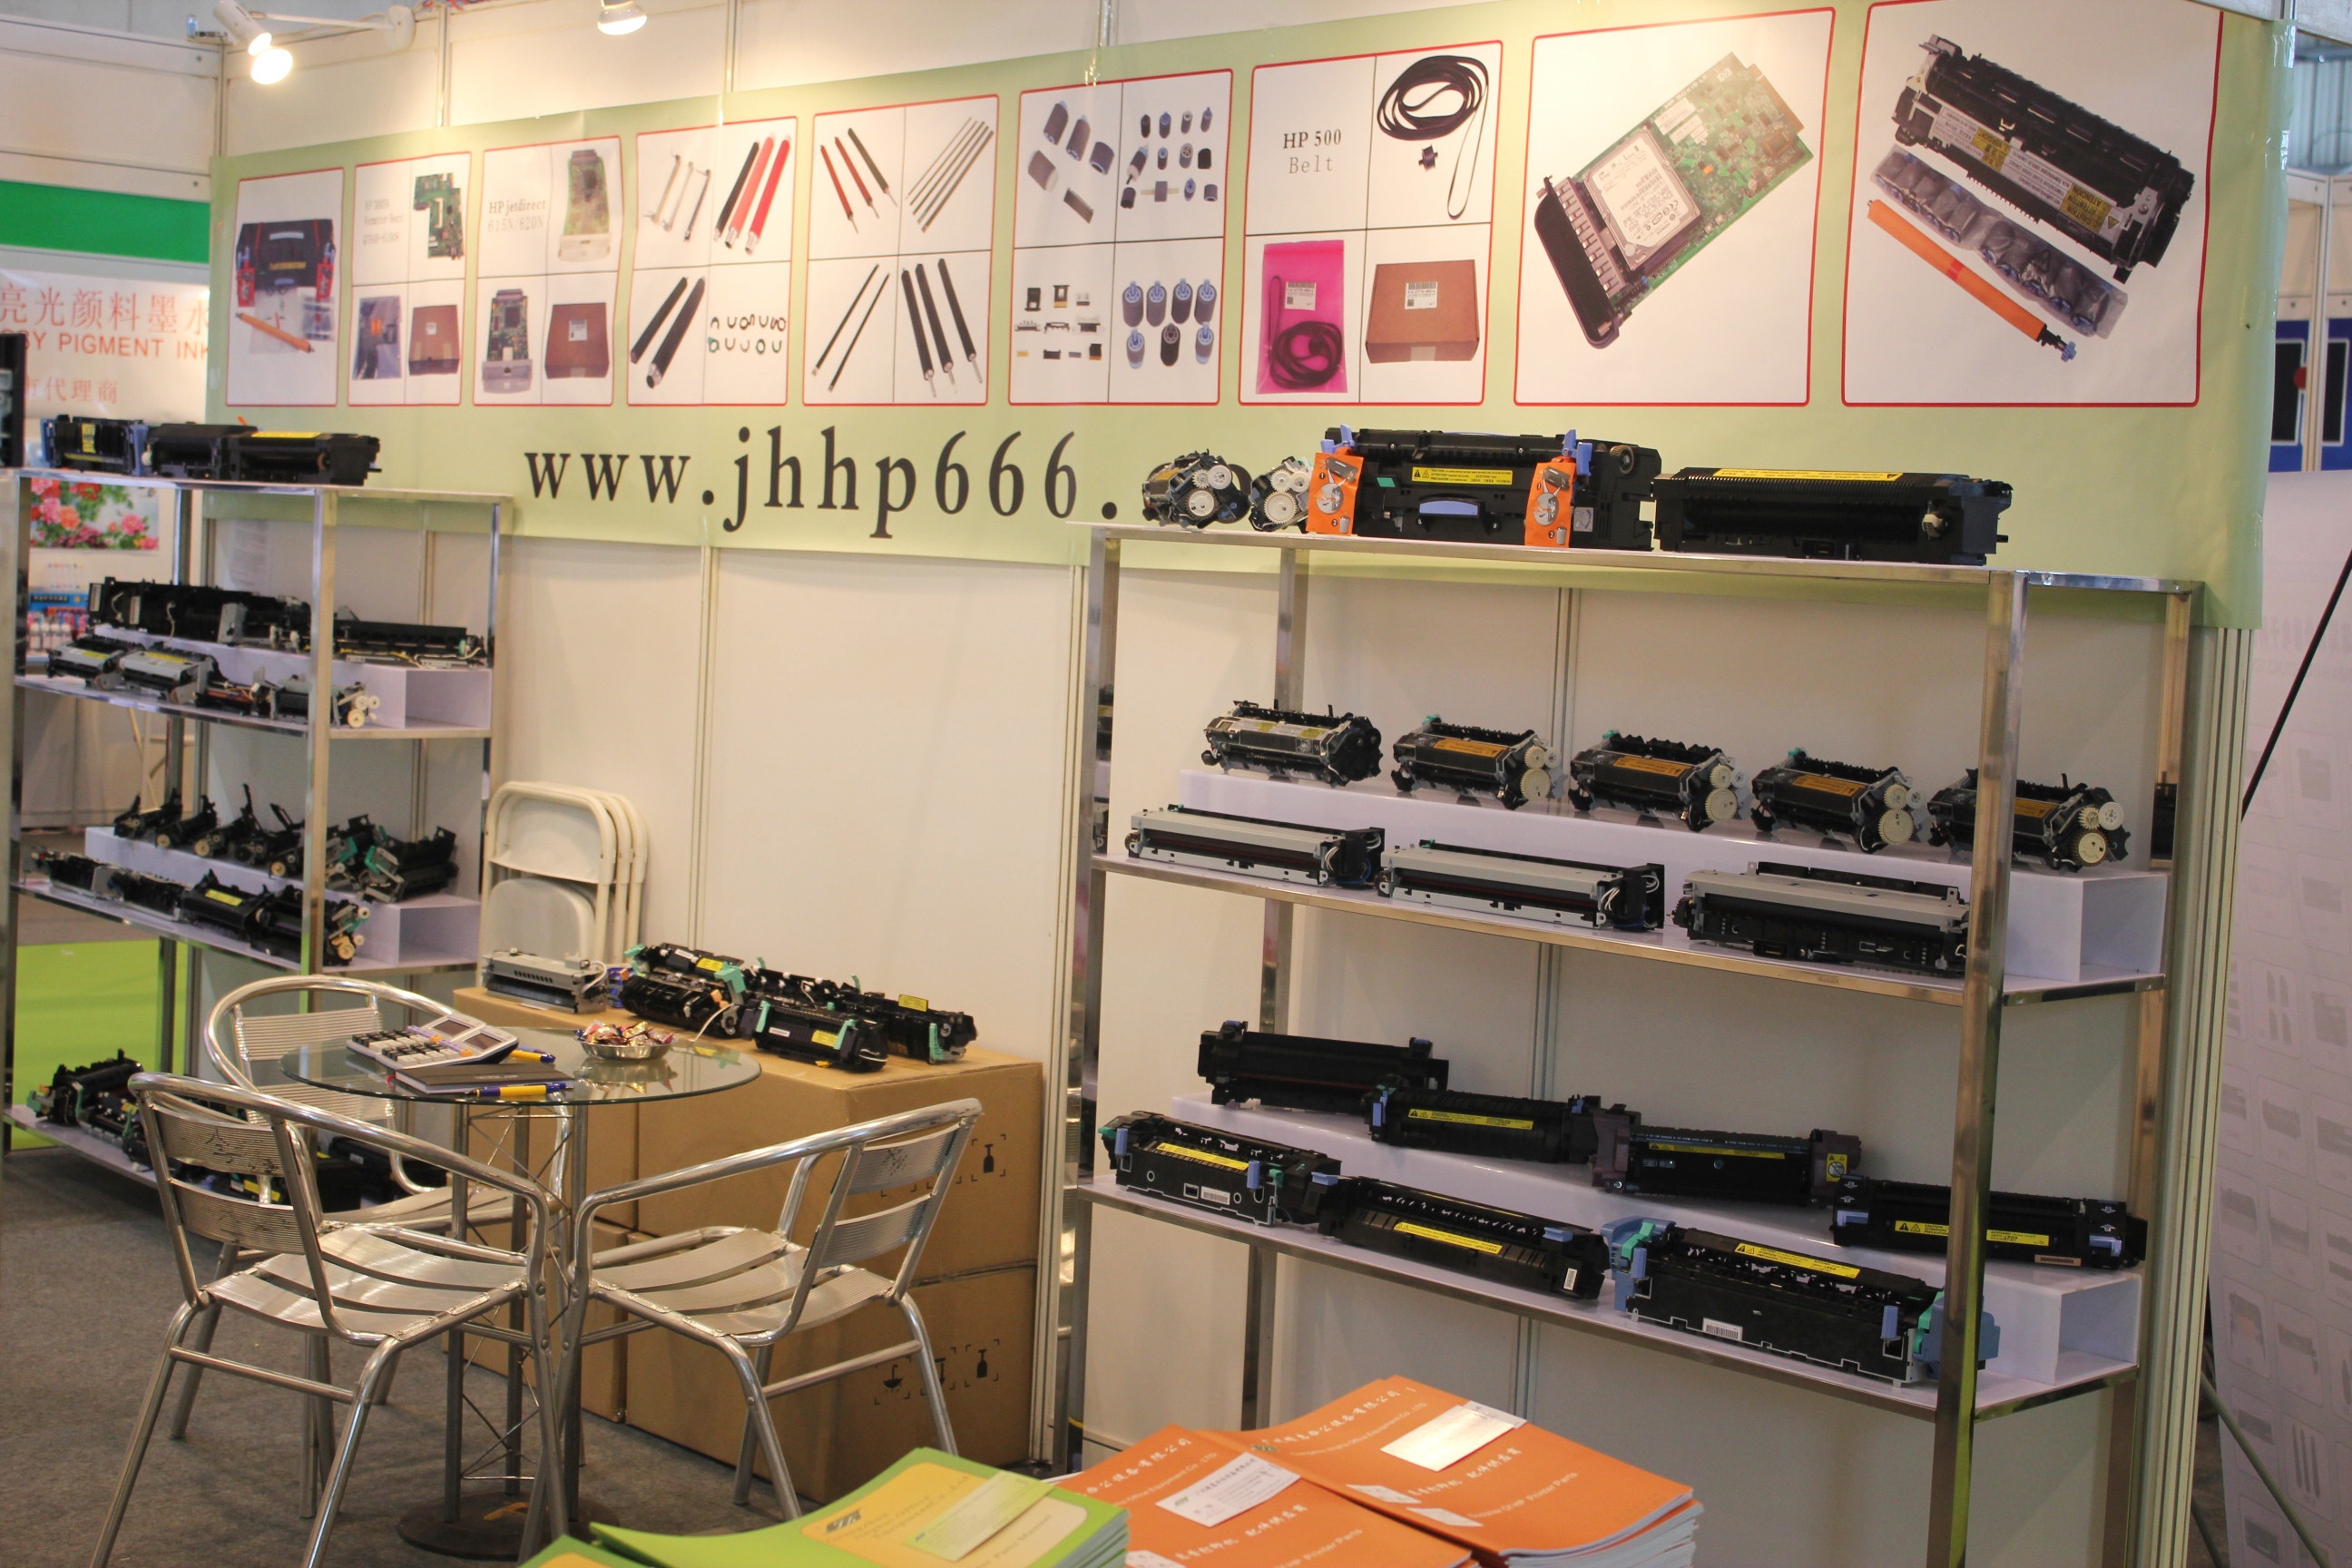 Guangzhou Jinghui Printer Parts in Remax 2012 in Zhuhai